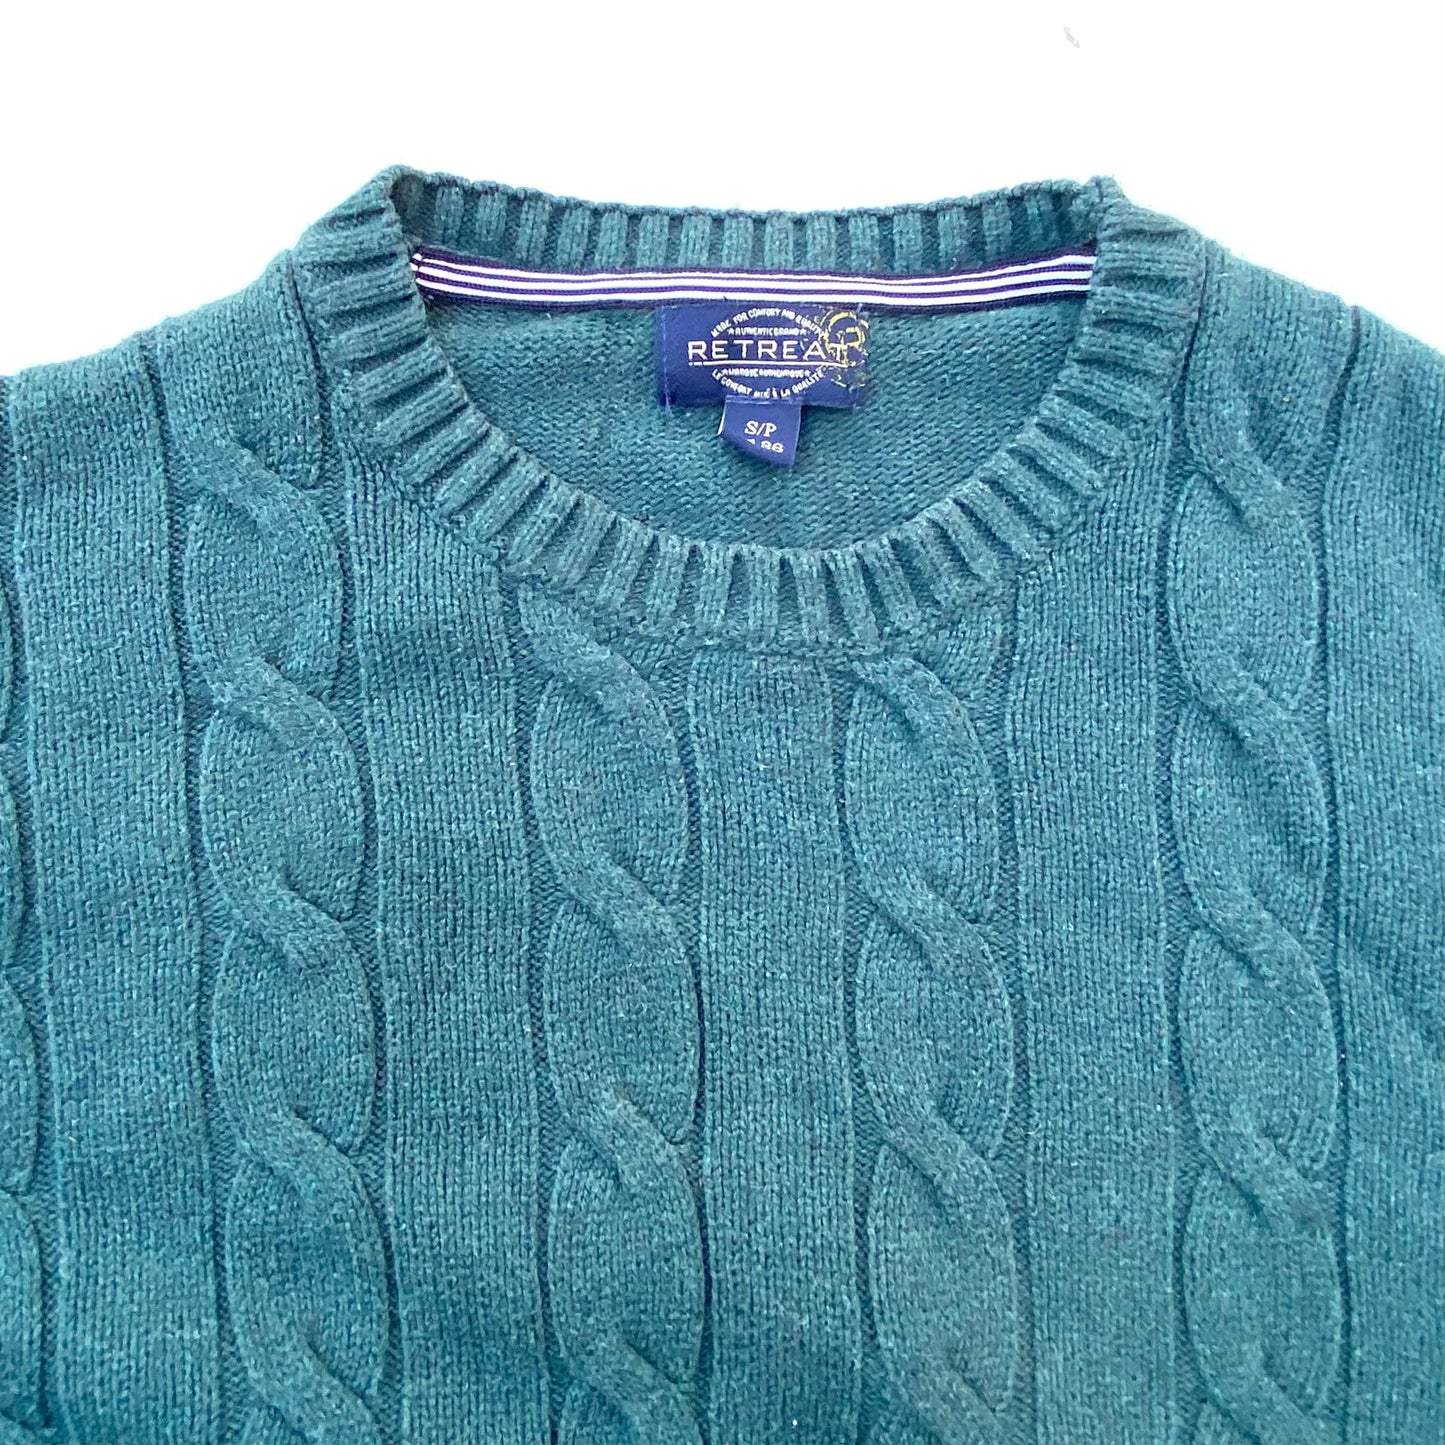 Vintage Retreat Knitwear Sweater